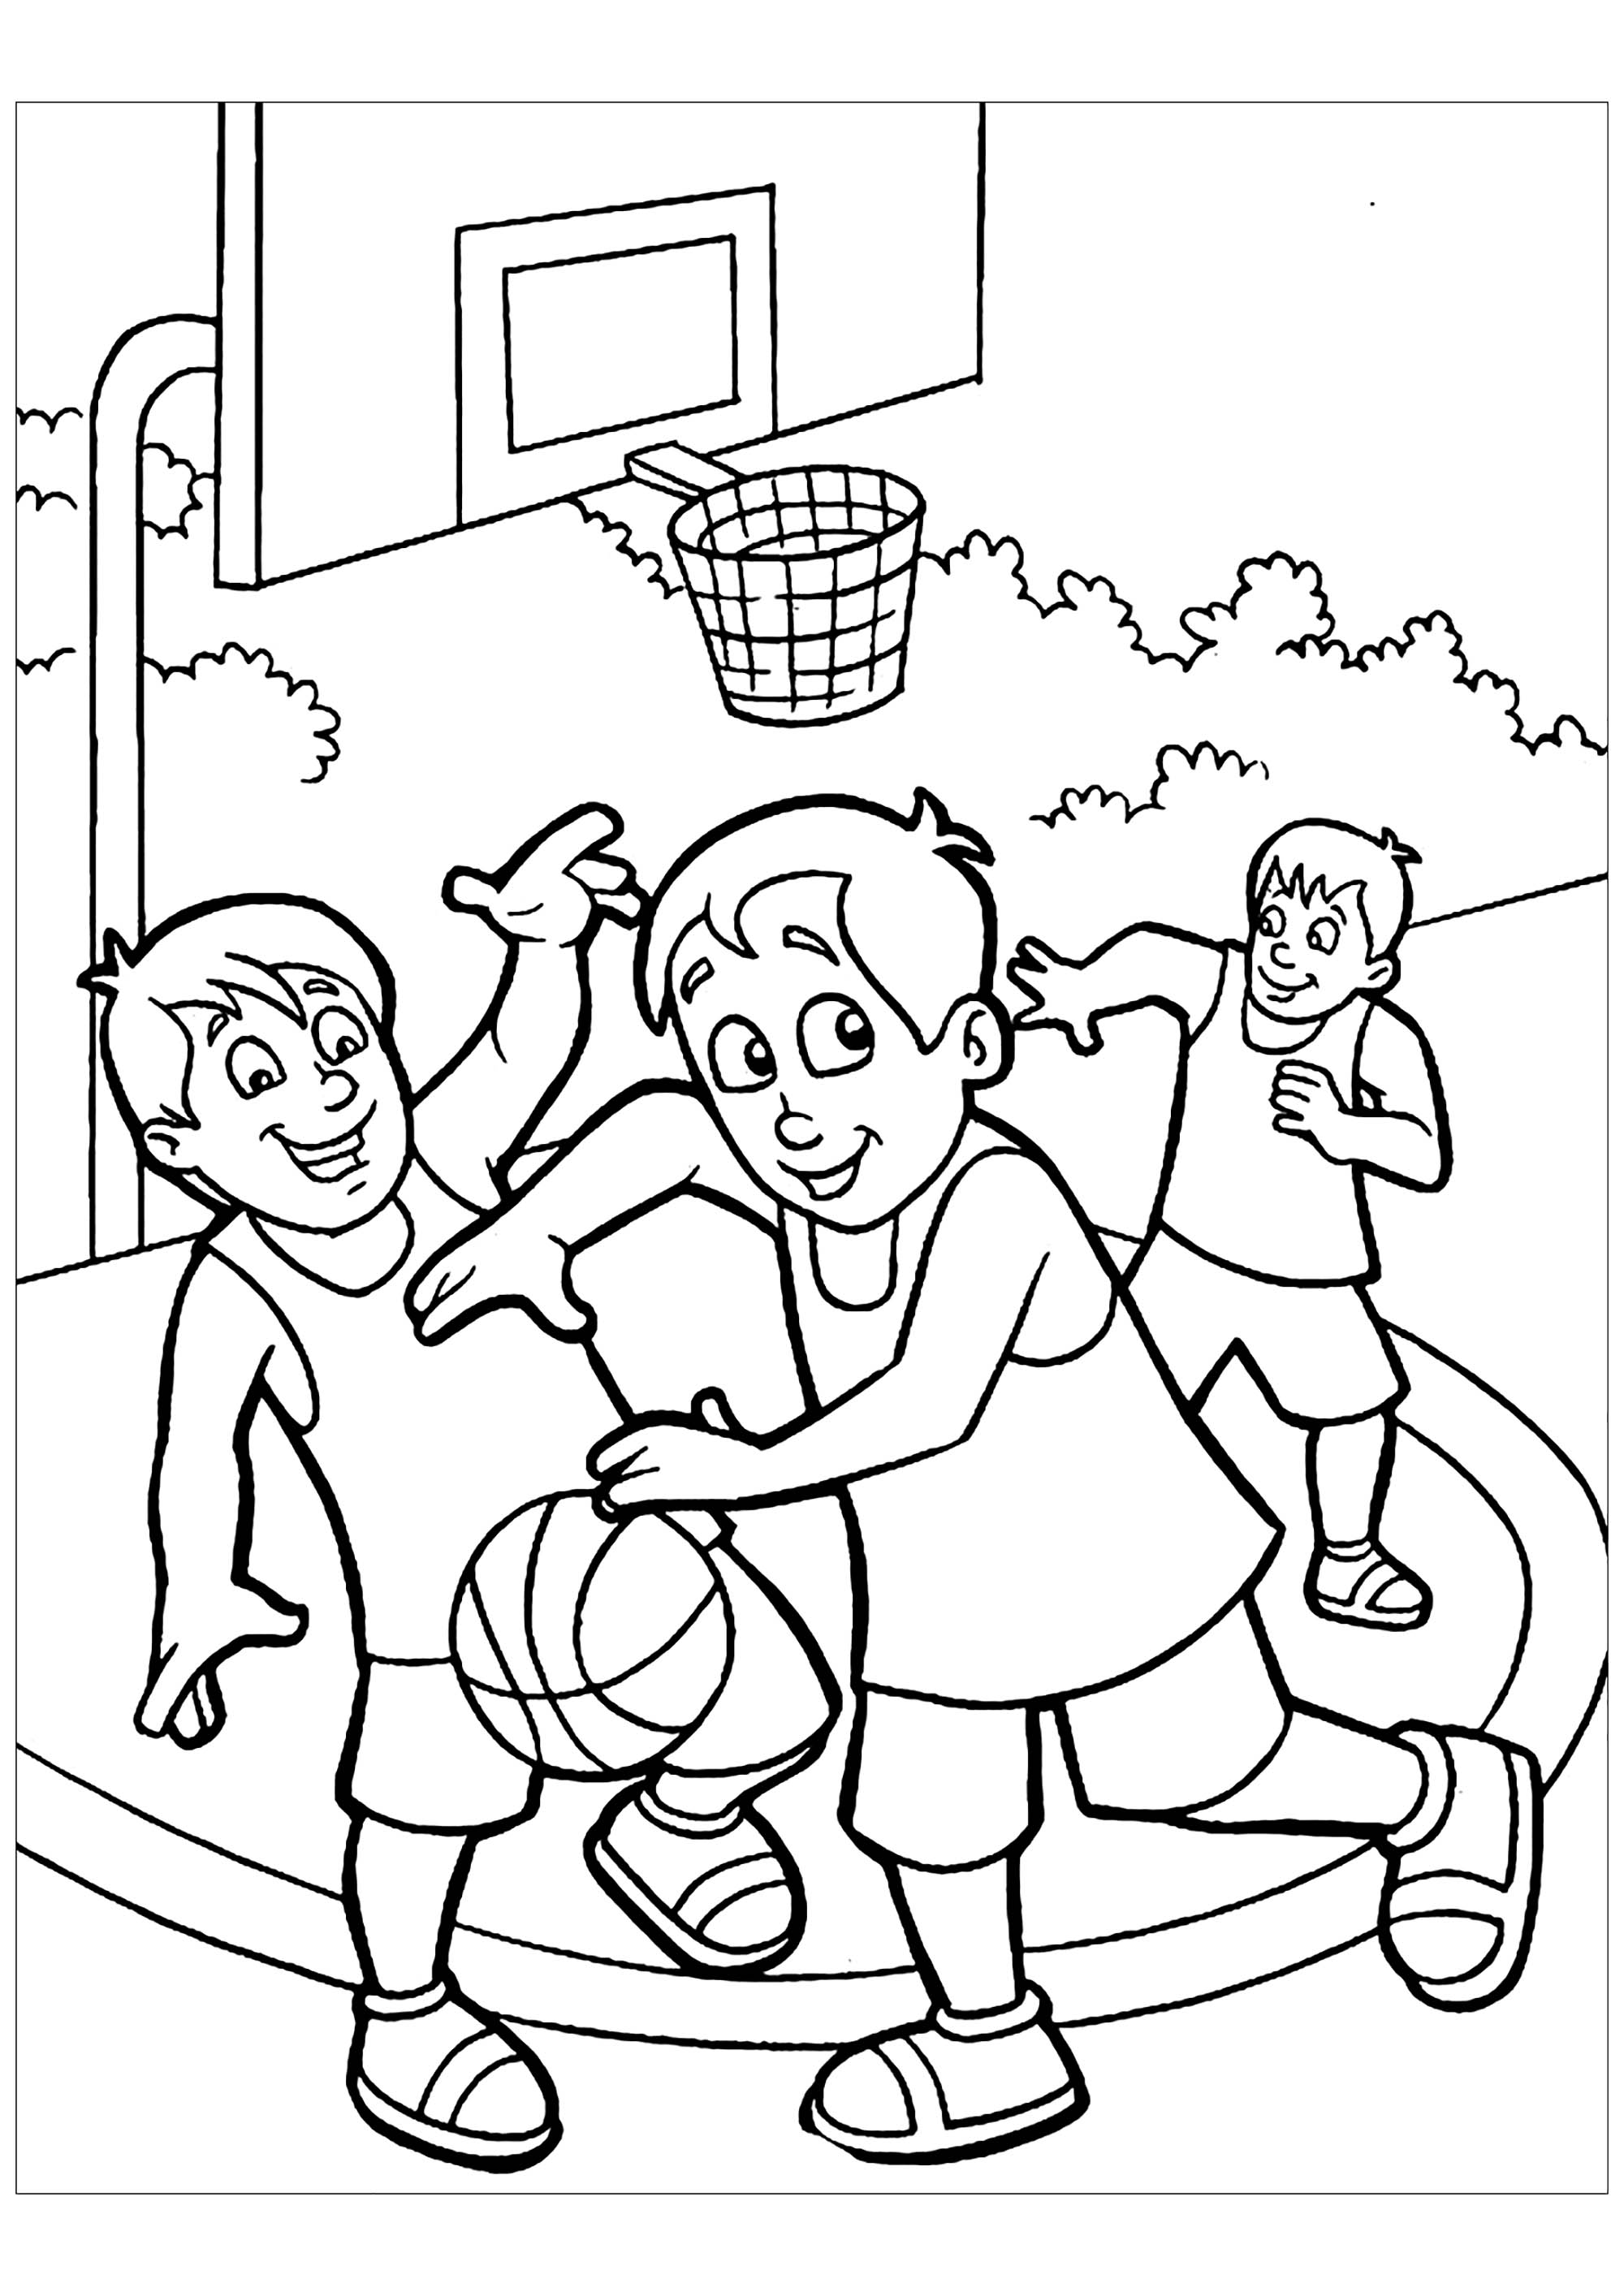 Divertidas páginas para colorear de Baloncesto para imprimir y colorear